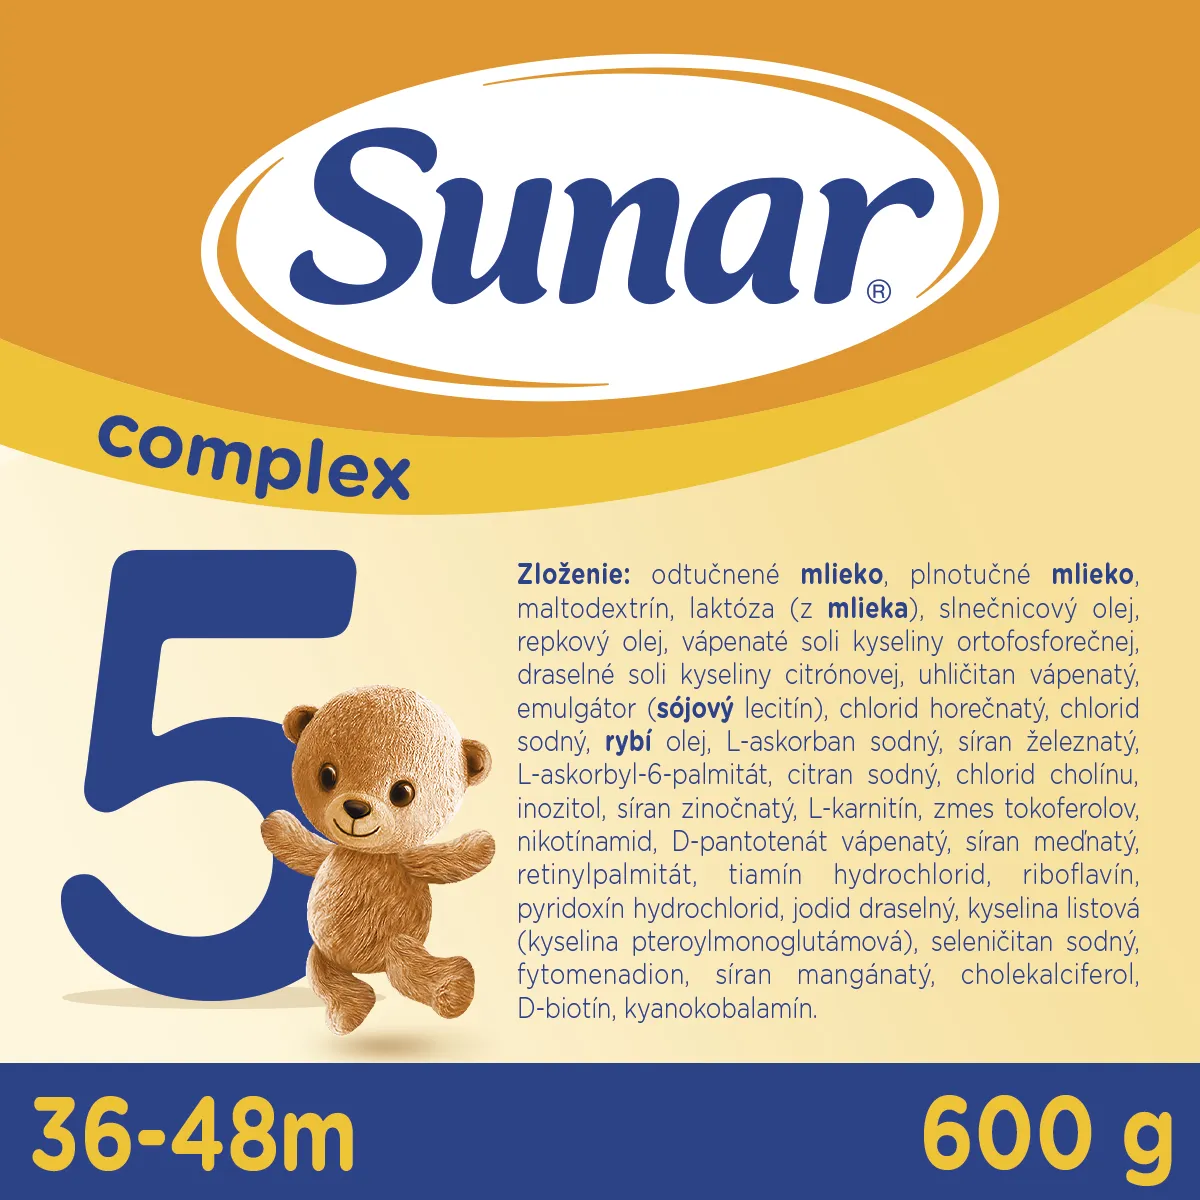 Sunar Complex 5 6×600 g, dojčenské mlieko, od 36. mesiaca